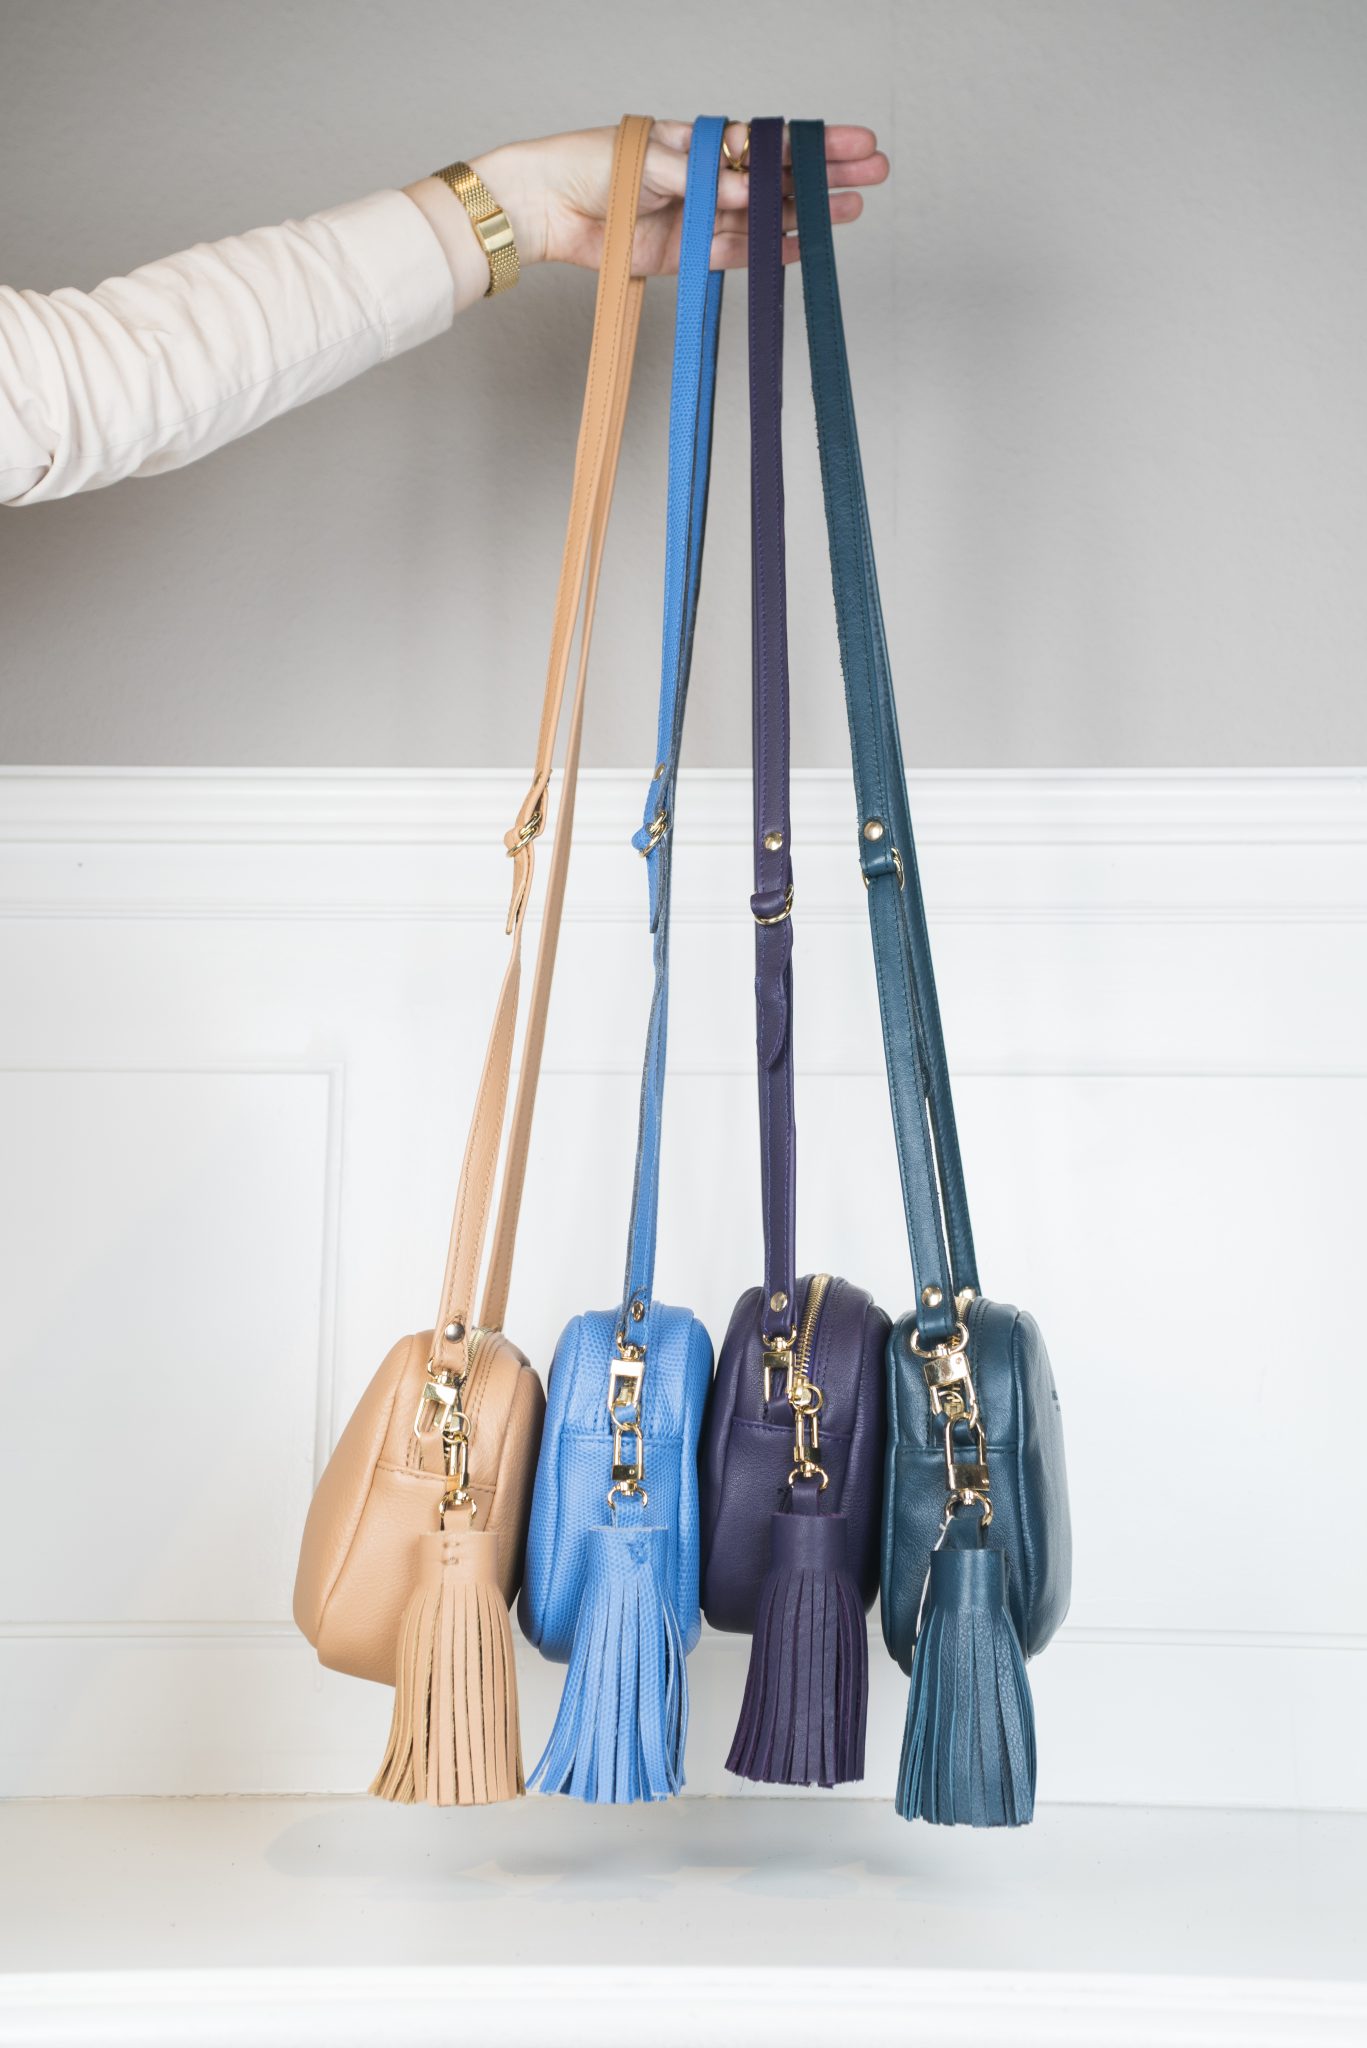 Die Taschen sind in 5 Farben erhältlich - Nude, Hellblau, Aubergine, Petrol, Lila. Jede Tasche ist mit einem Anhänger aus Leder der jeweiligen Farbe bestückt